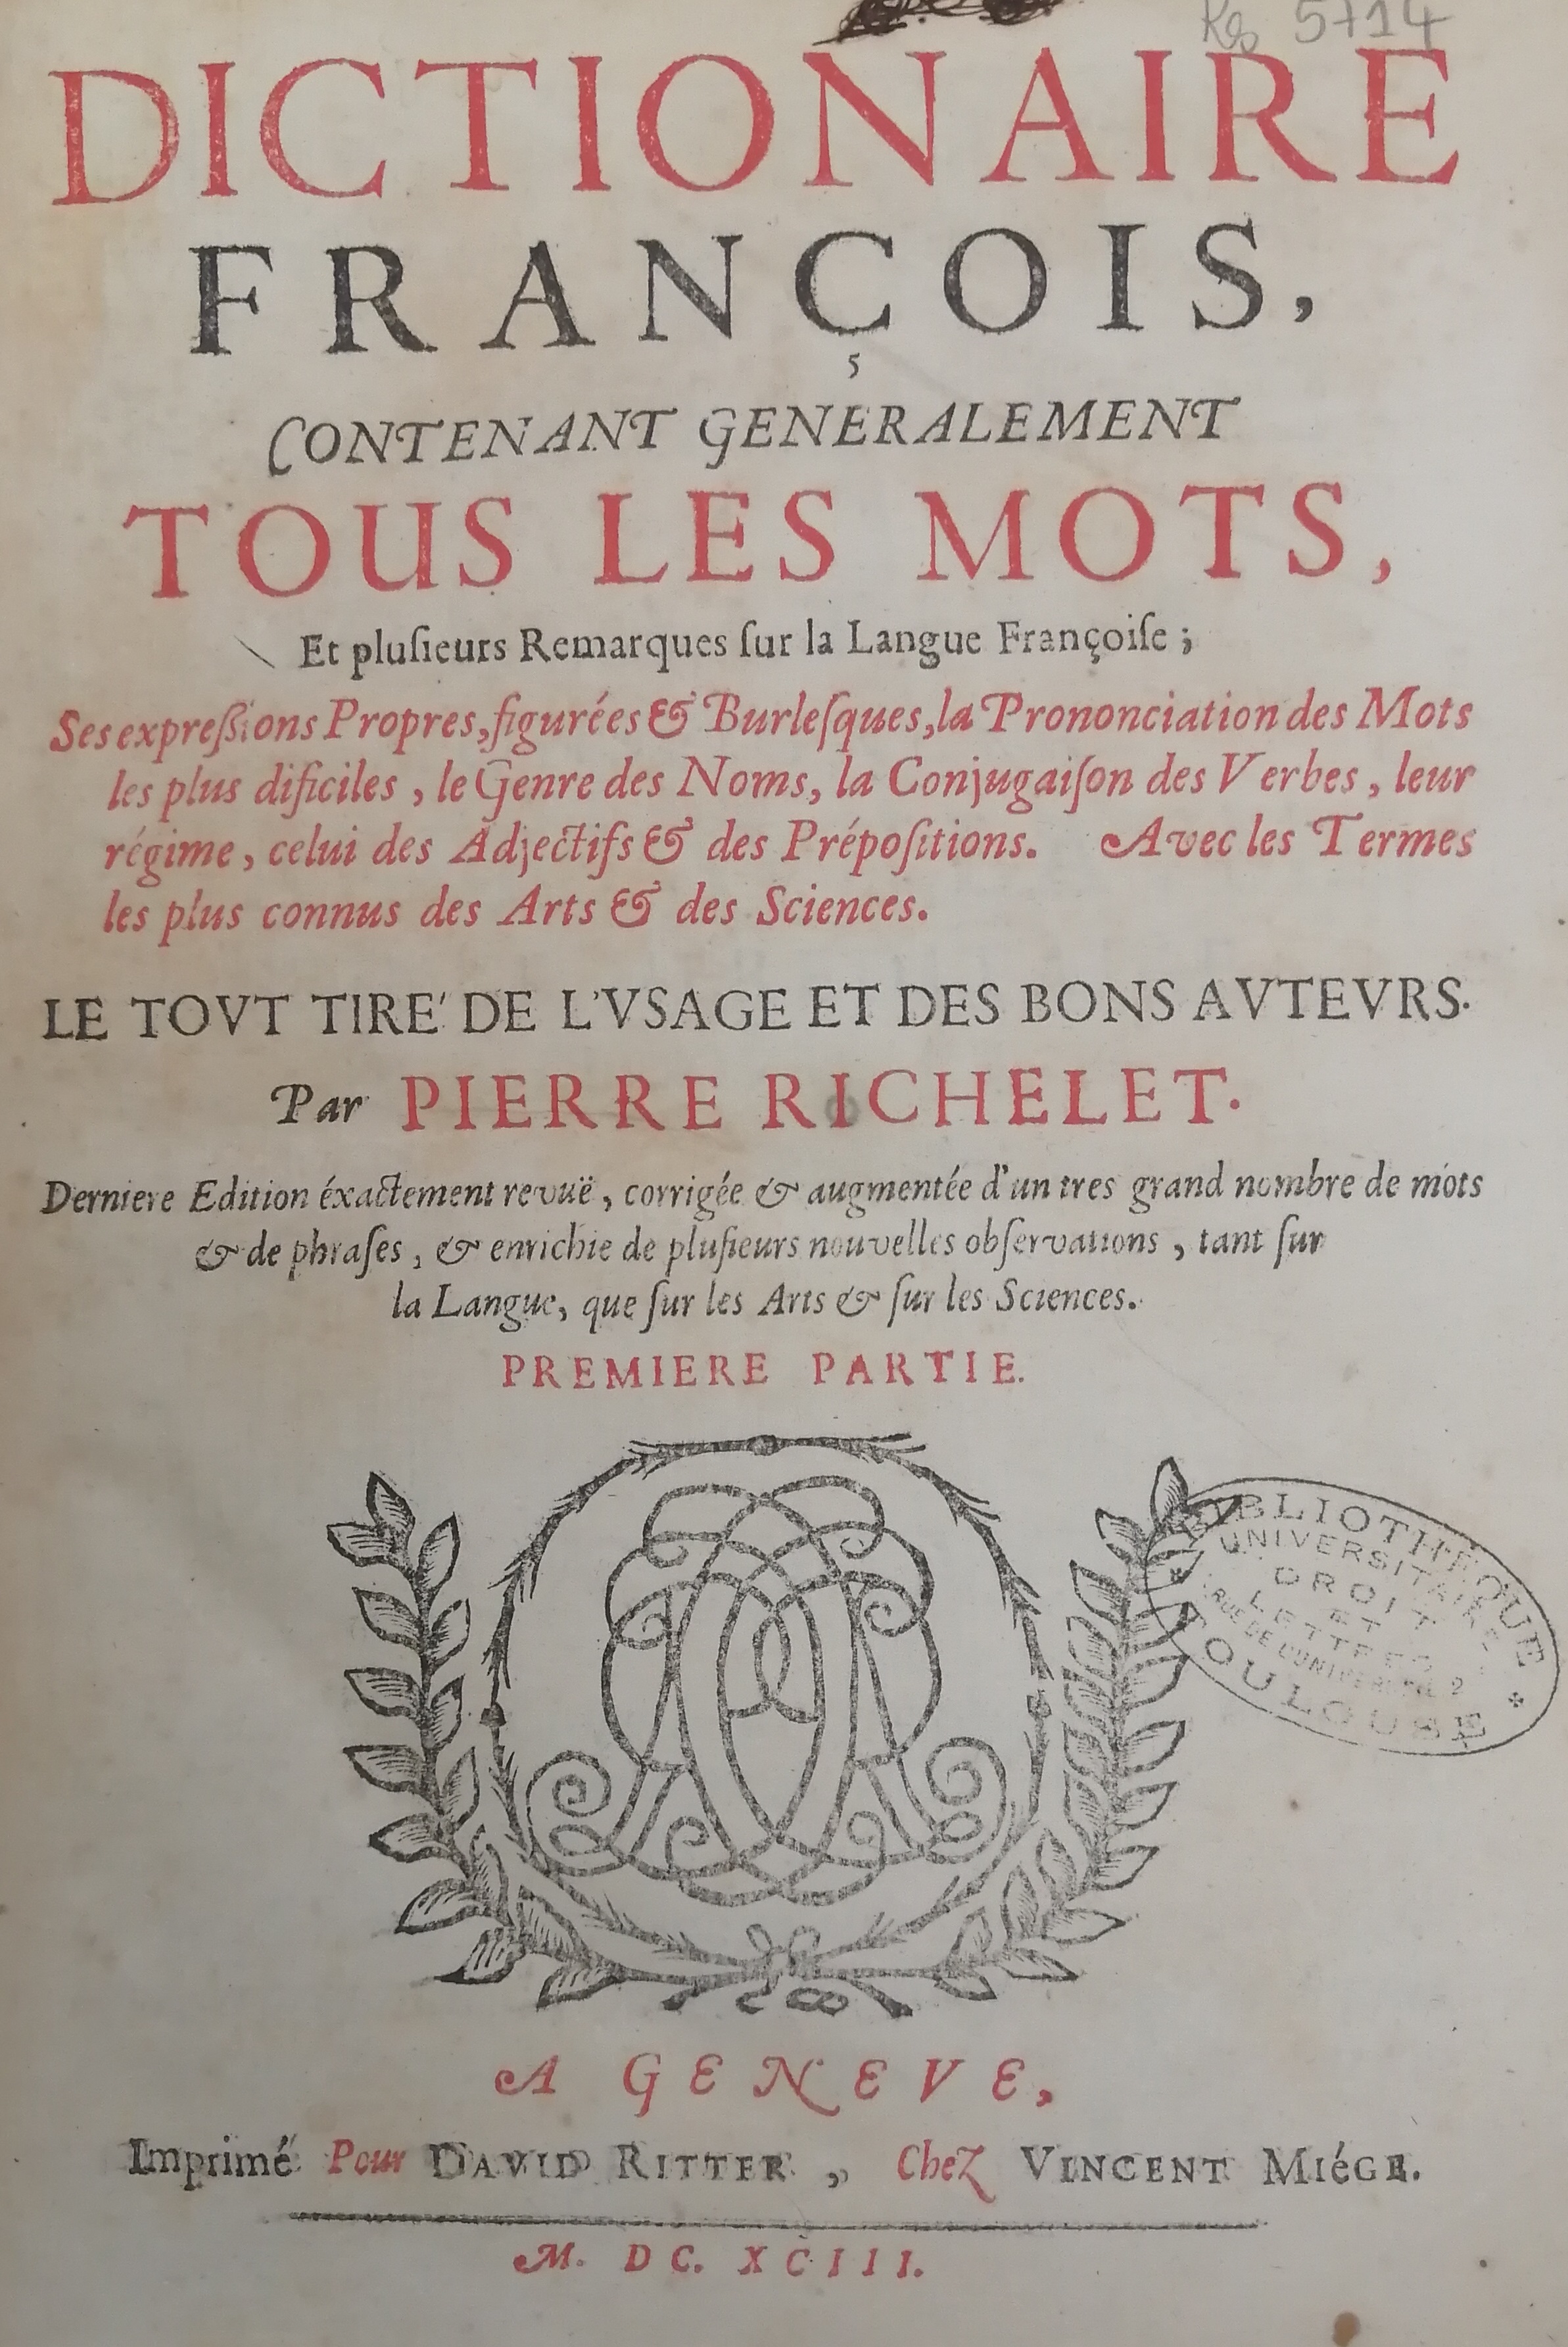 Dictionnaire de Richelet